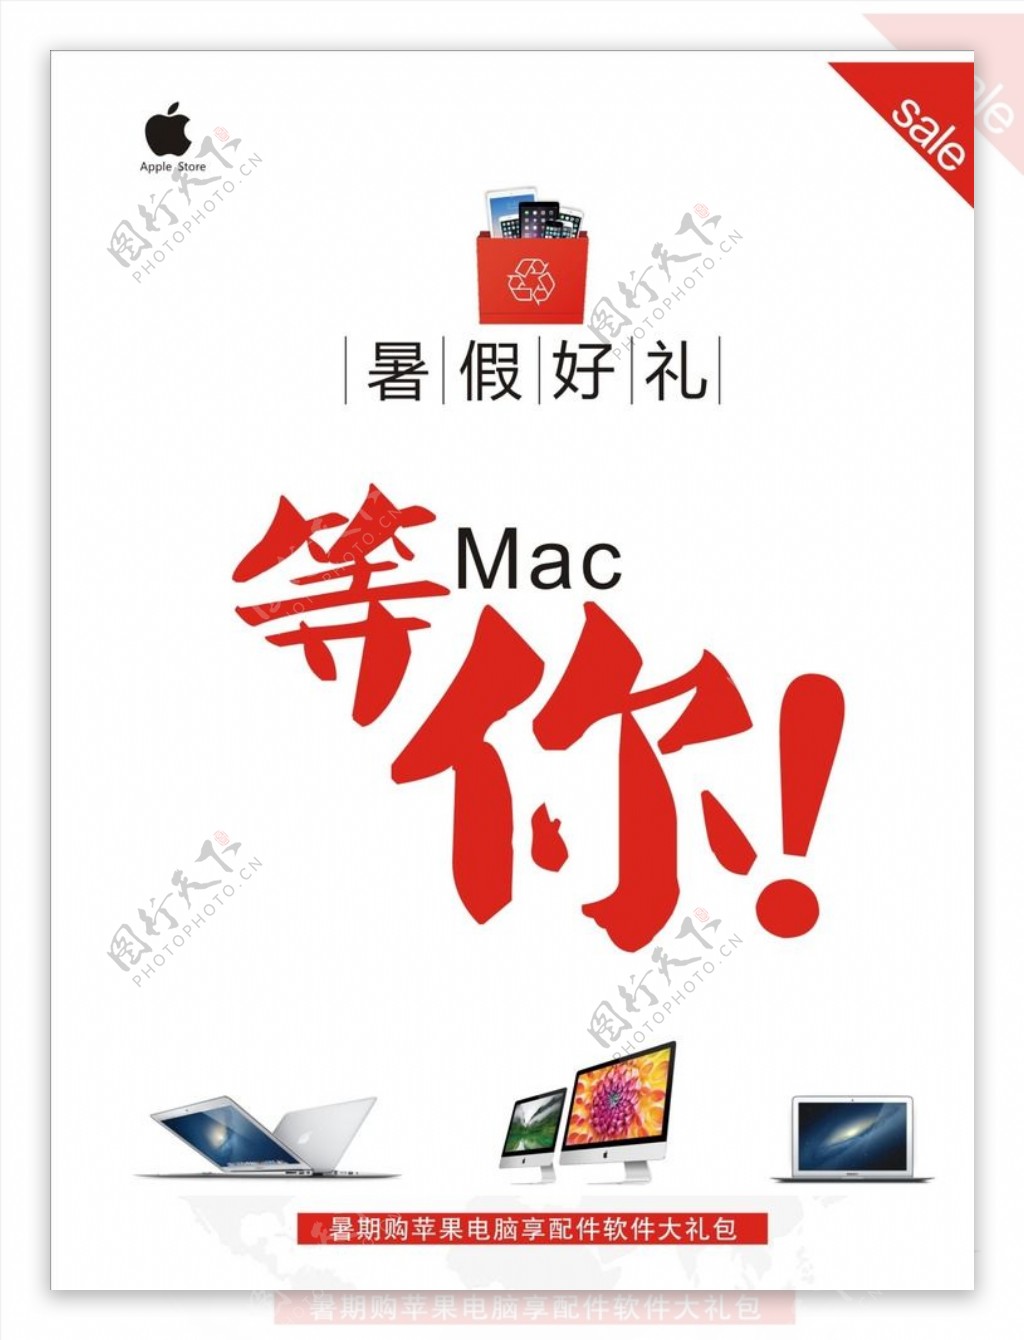 appleMac等你海报